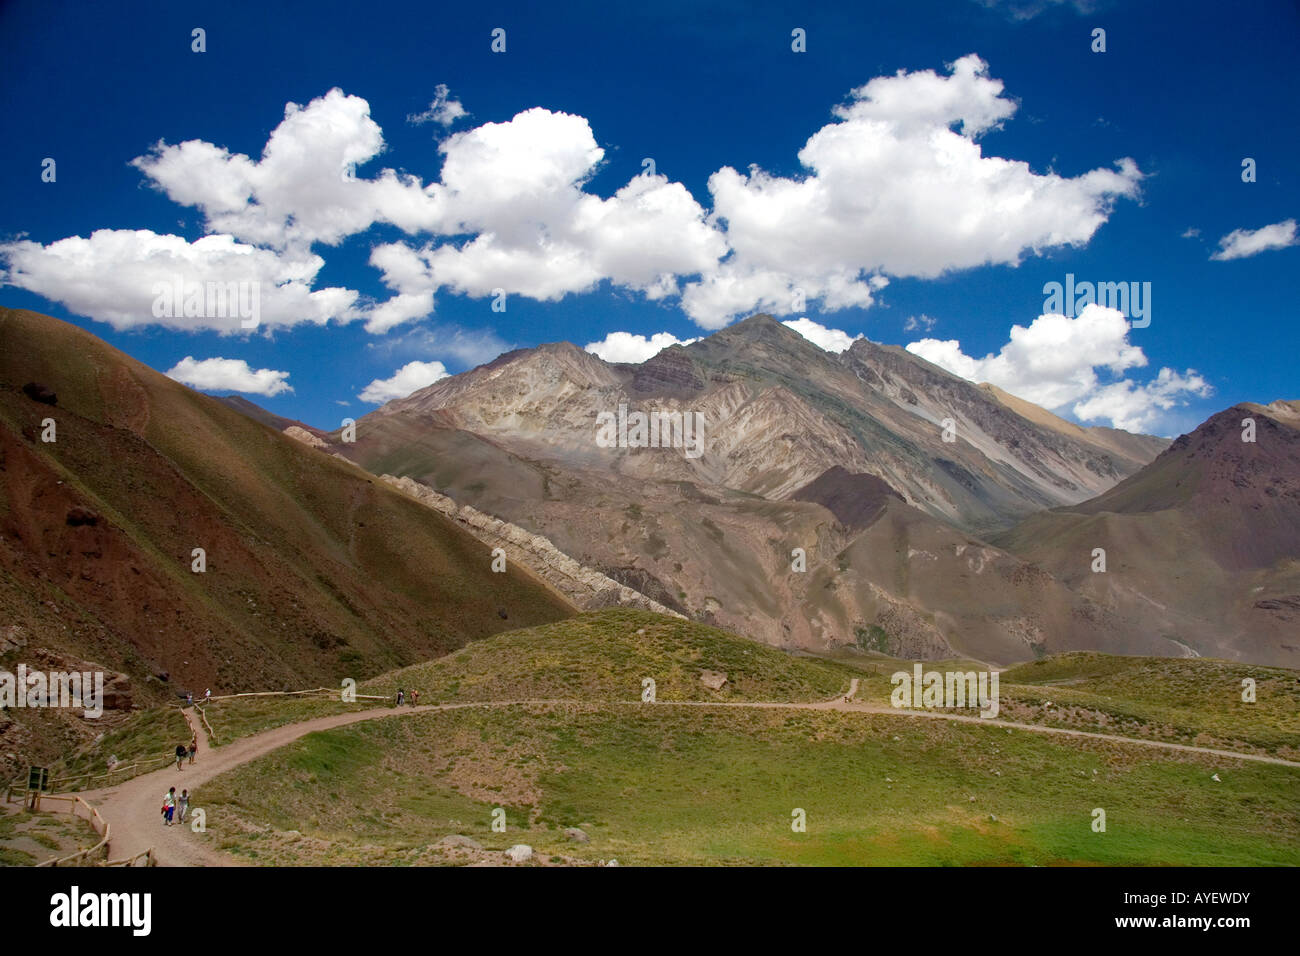 La gente camina por un sendero en la Cordillera de Los Andes, Argentina Foto de stock